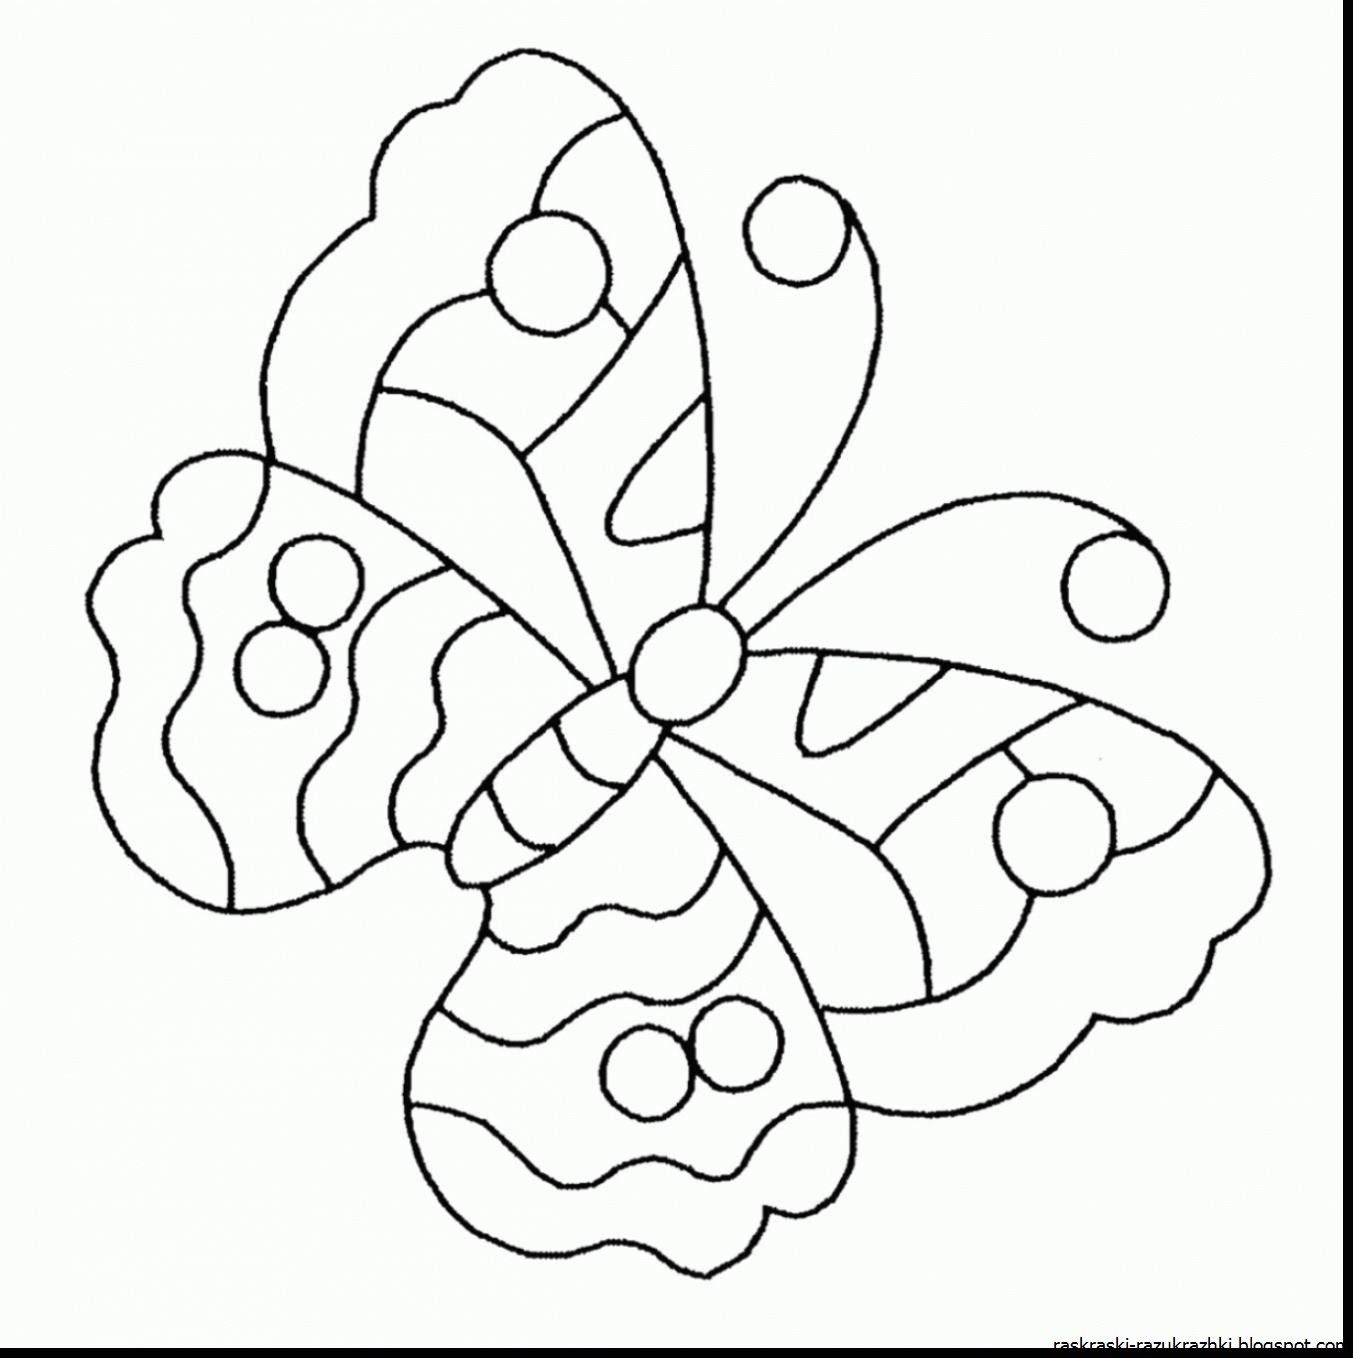 Пластилинография средняя группа шаблоны. Раскраска "бабочки". Бабочка раскраска для детей. Рисунки дляраскршивания. Рисунок бабочки для раскрашивания.